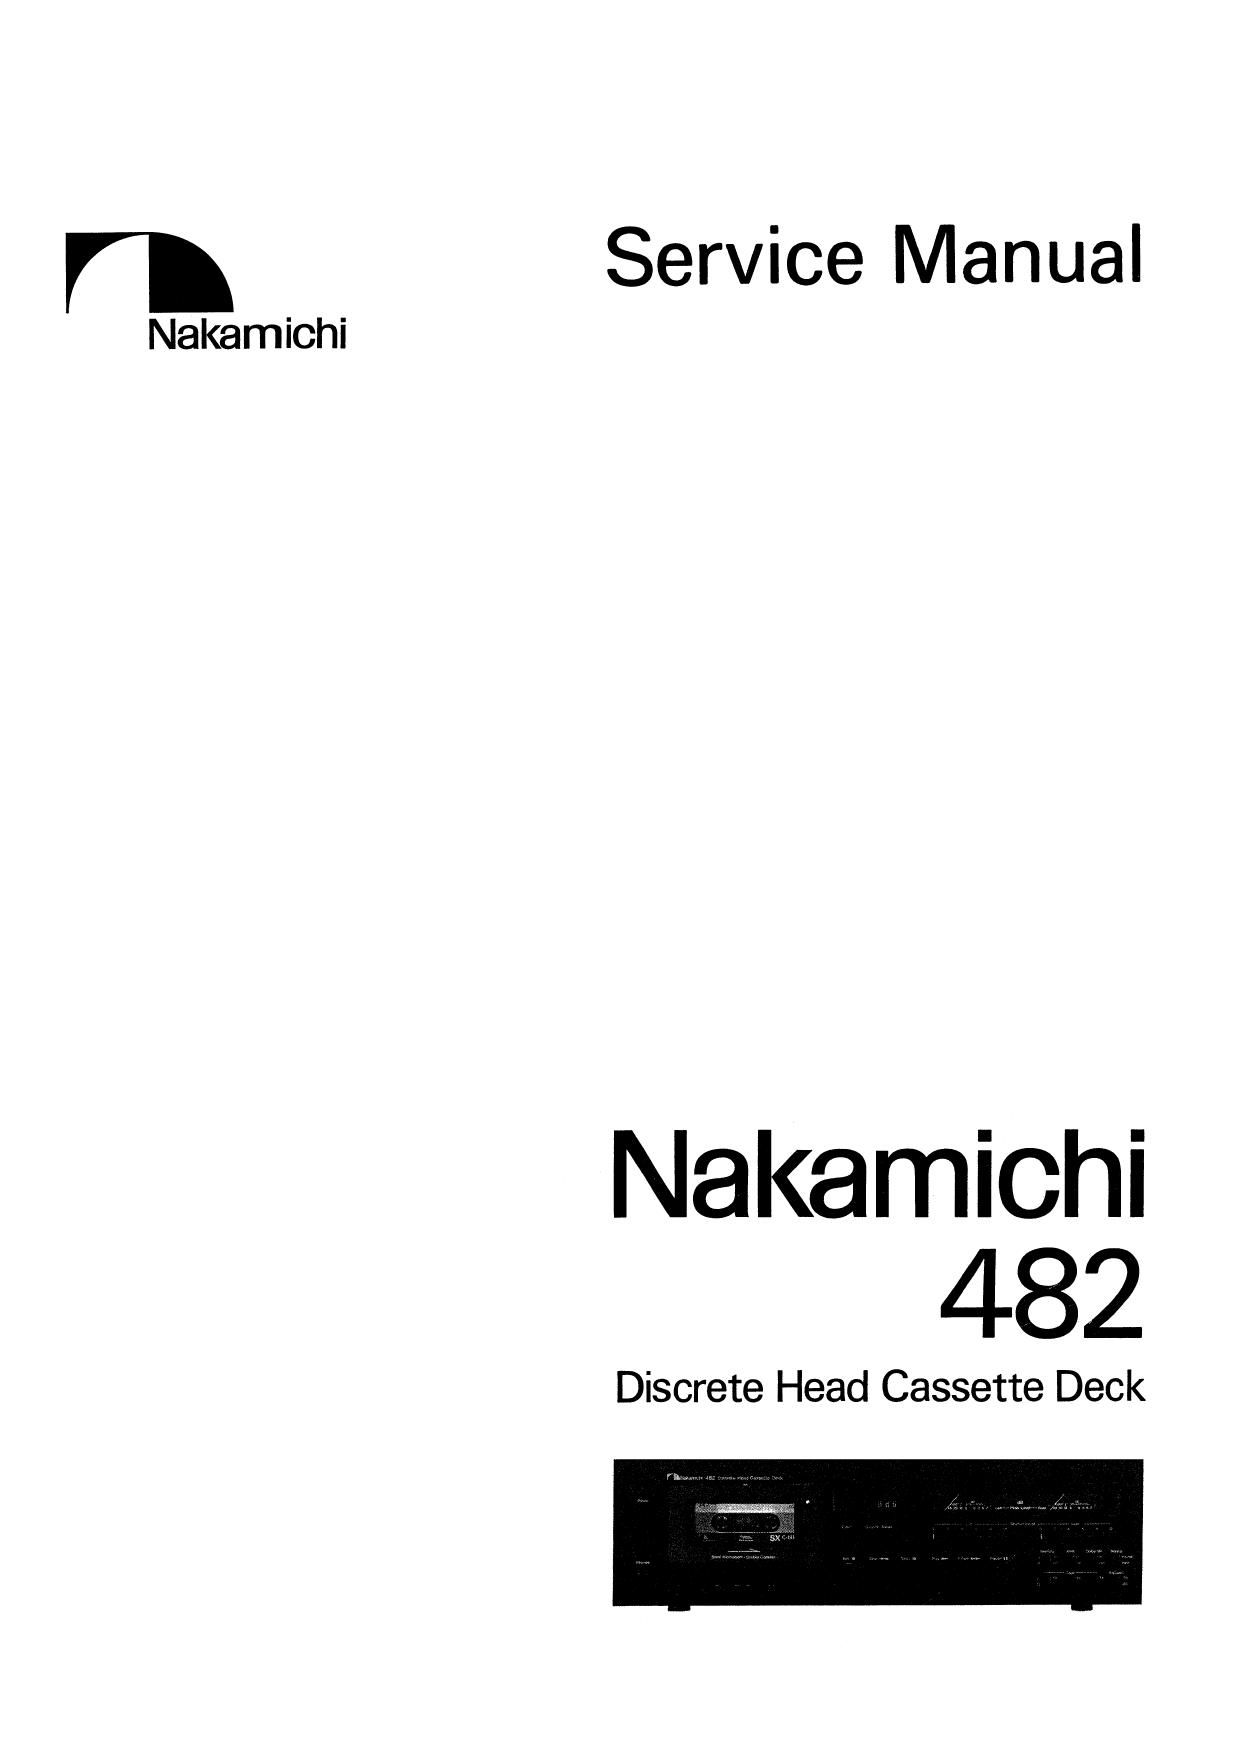 Nakamichi 482 Service Manual